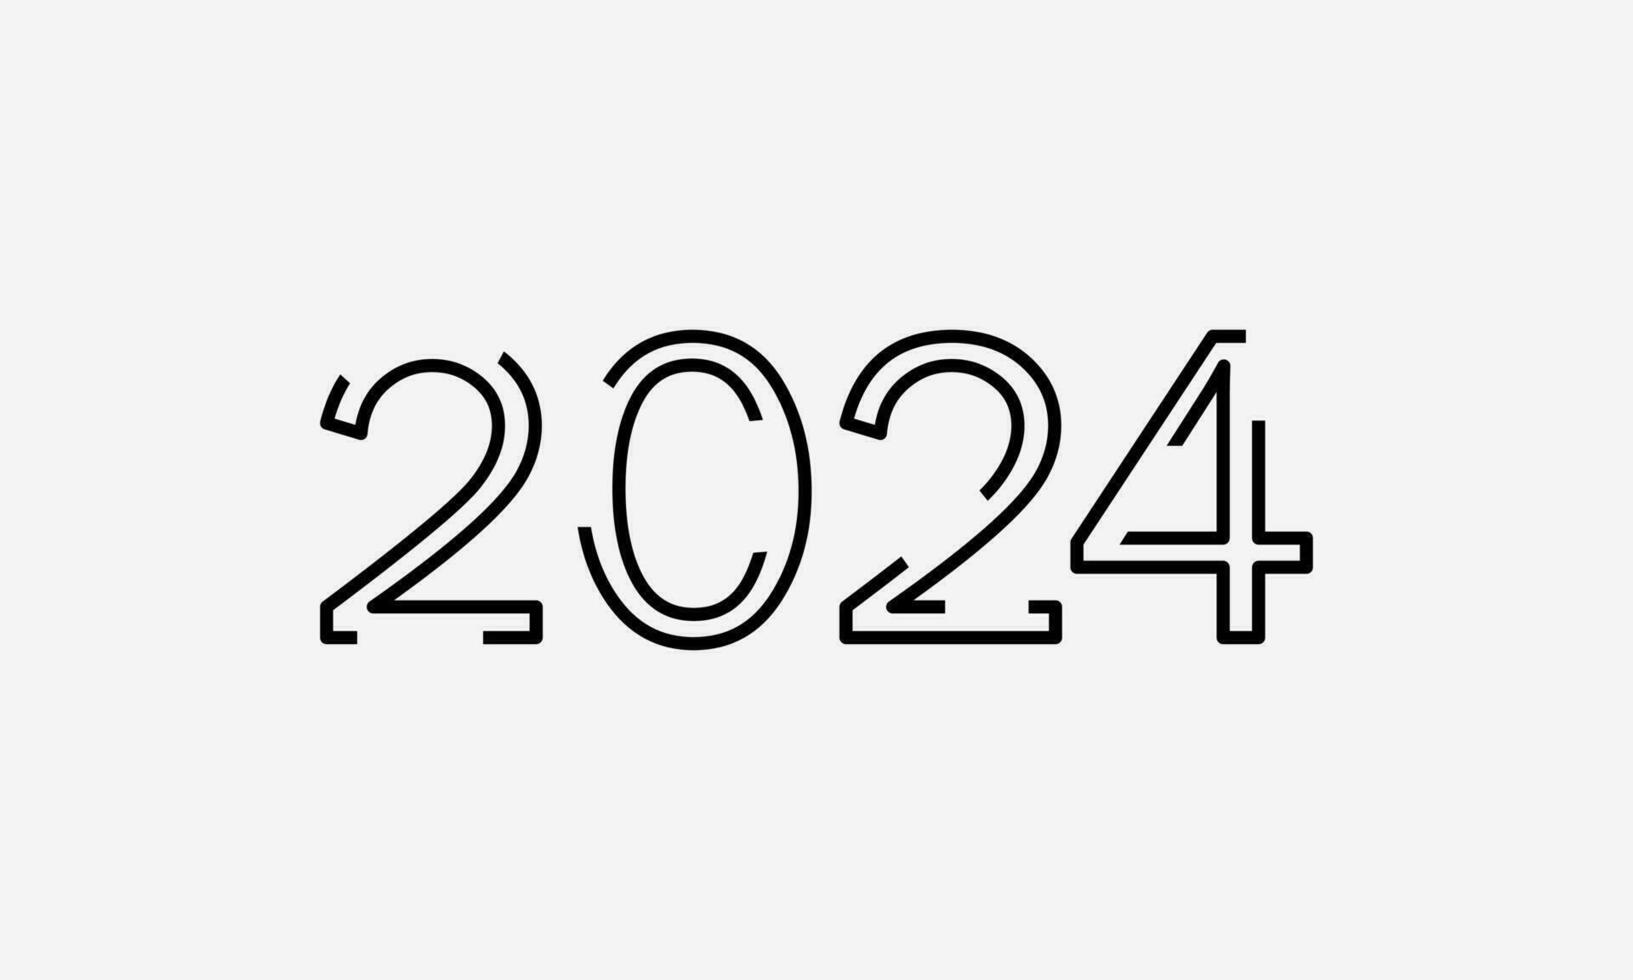 2024 tipografia moderno futurista fundo tipografia com Preto cor e branco fundo vetor